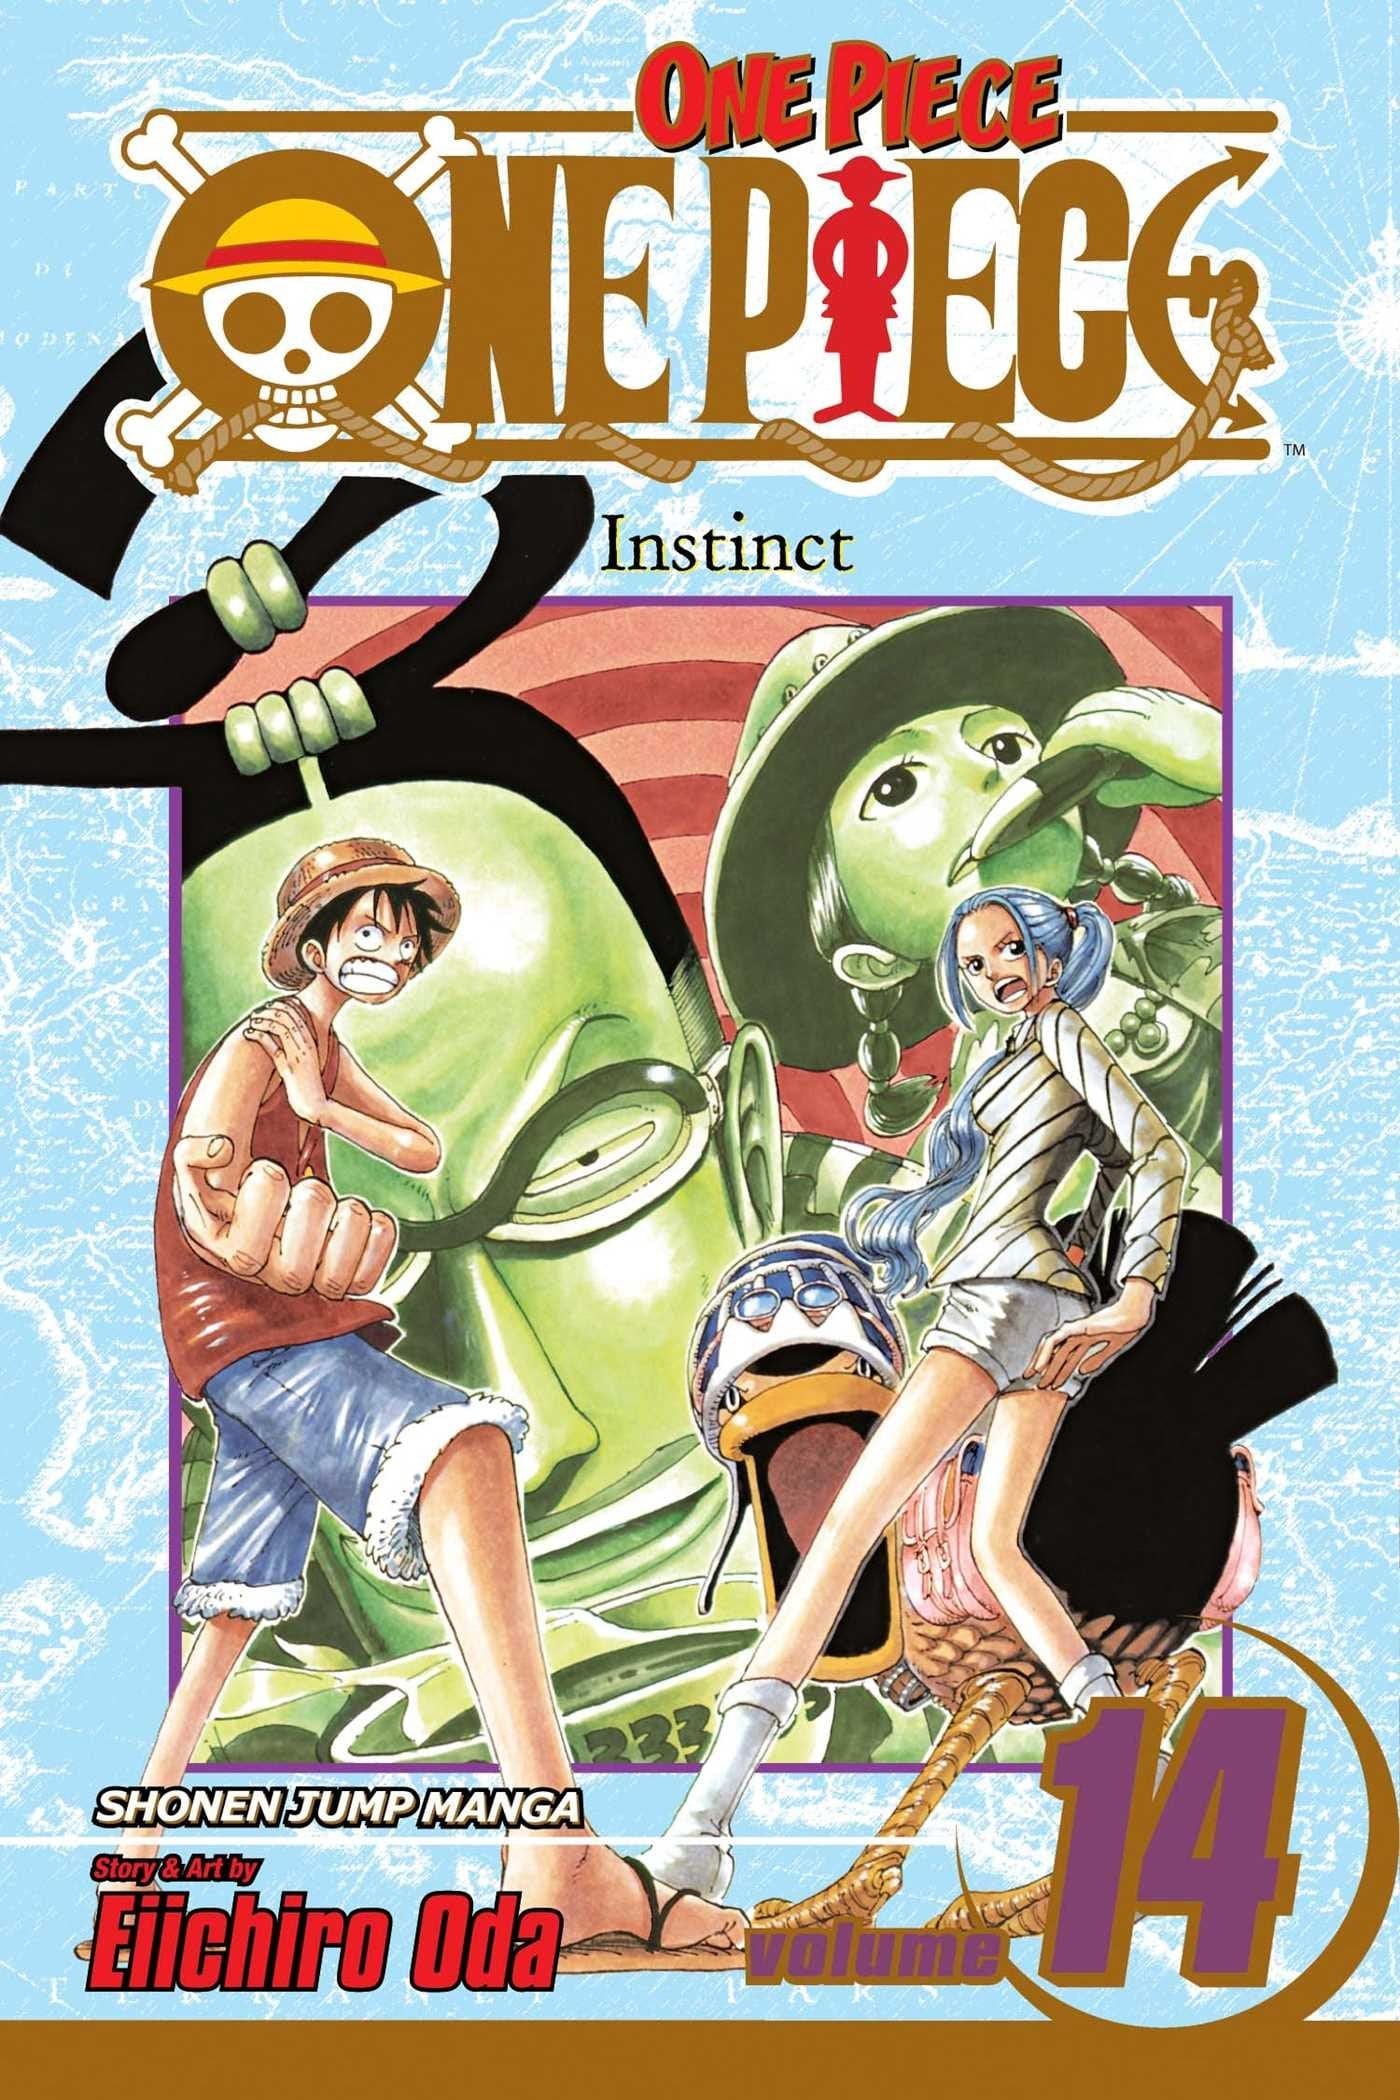 One Piece Vol. 14: Instinct - Third Eye